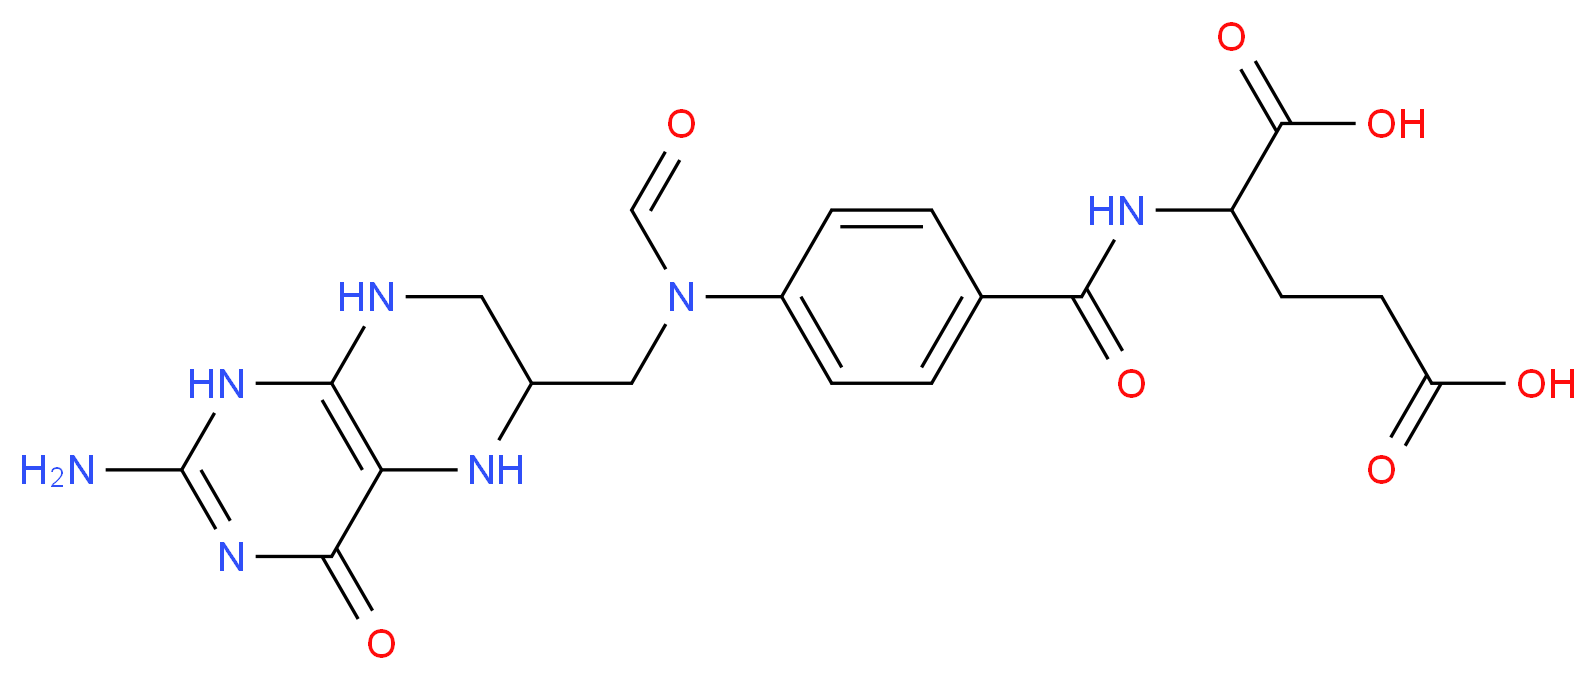 2800-34-2 molecular structure